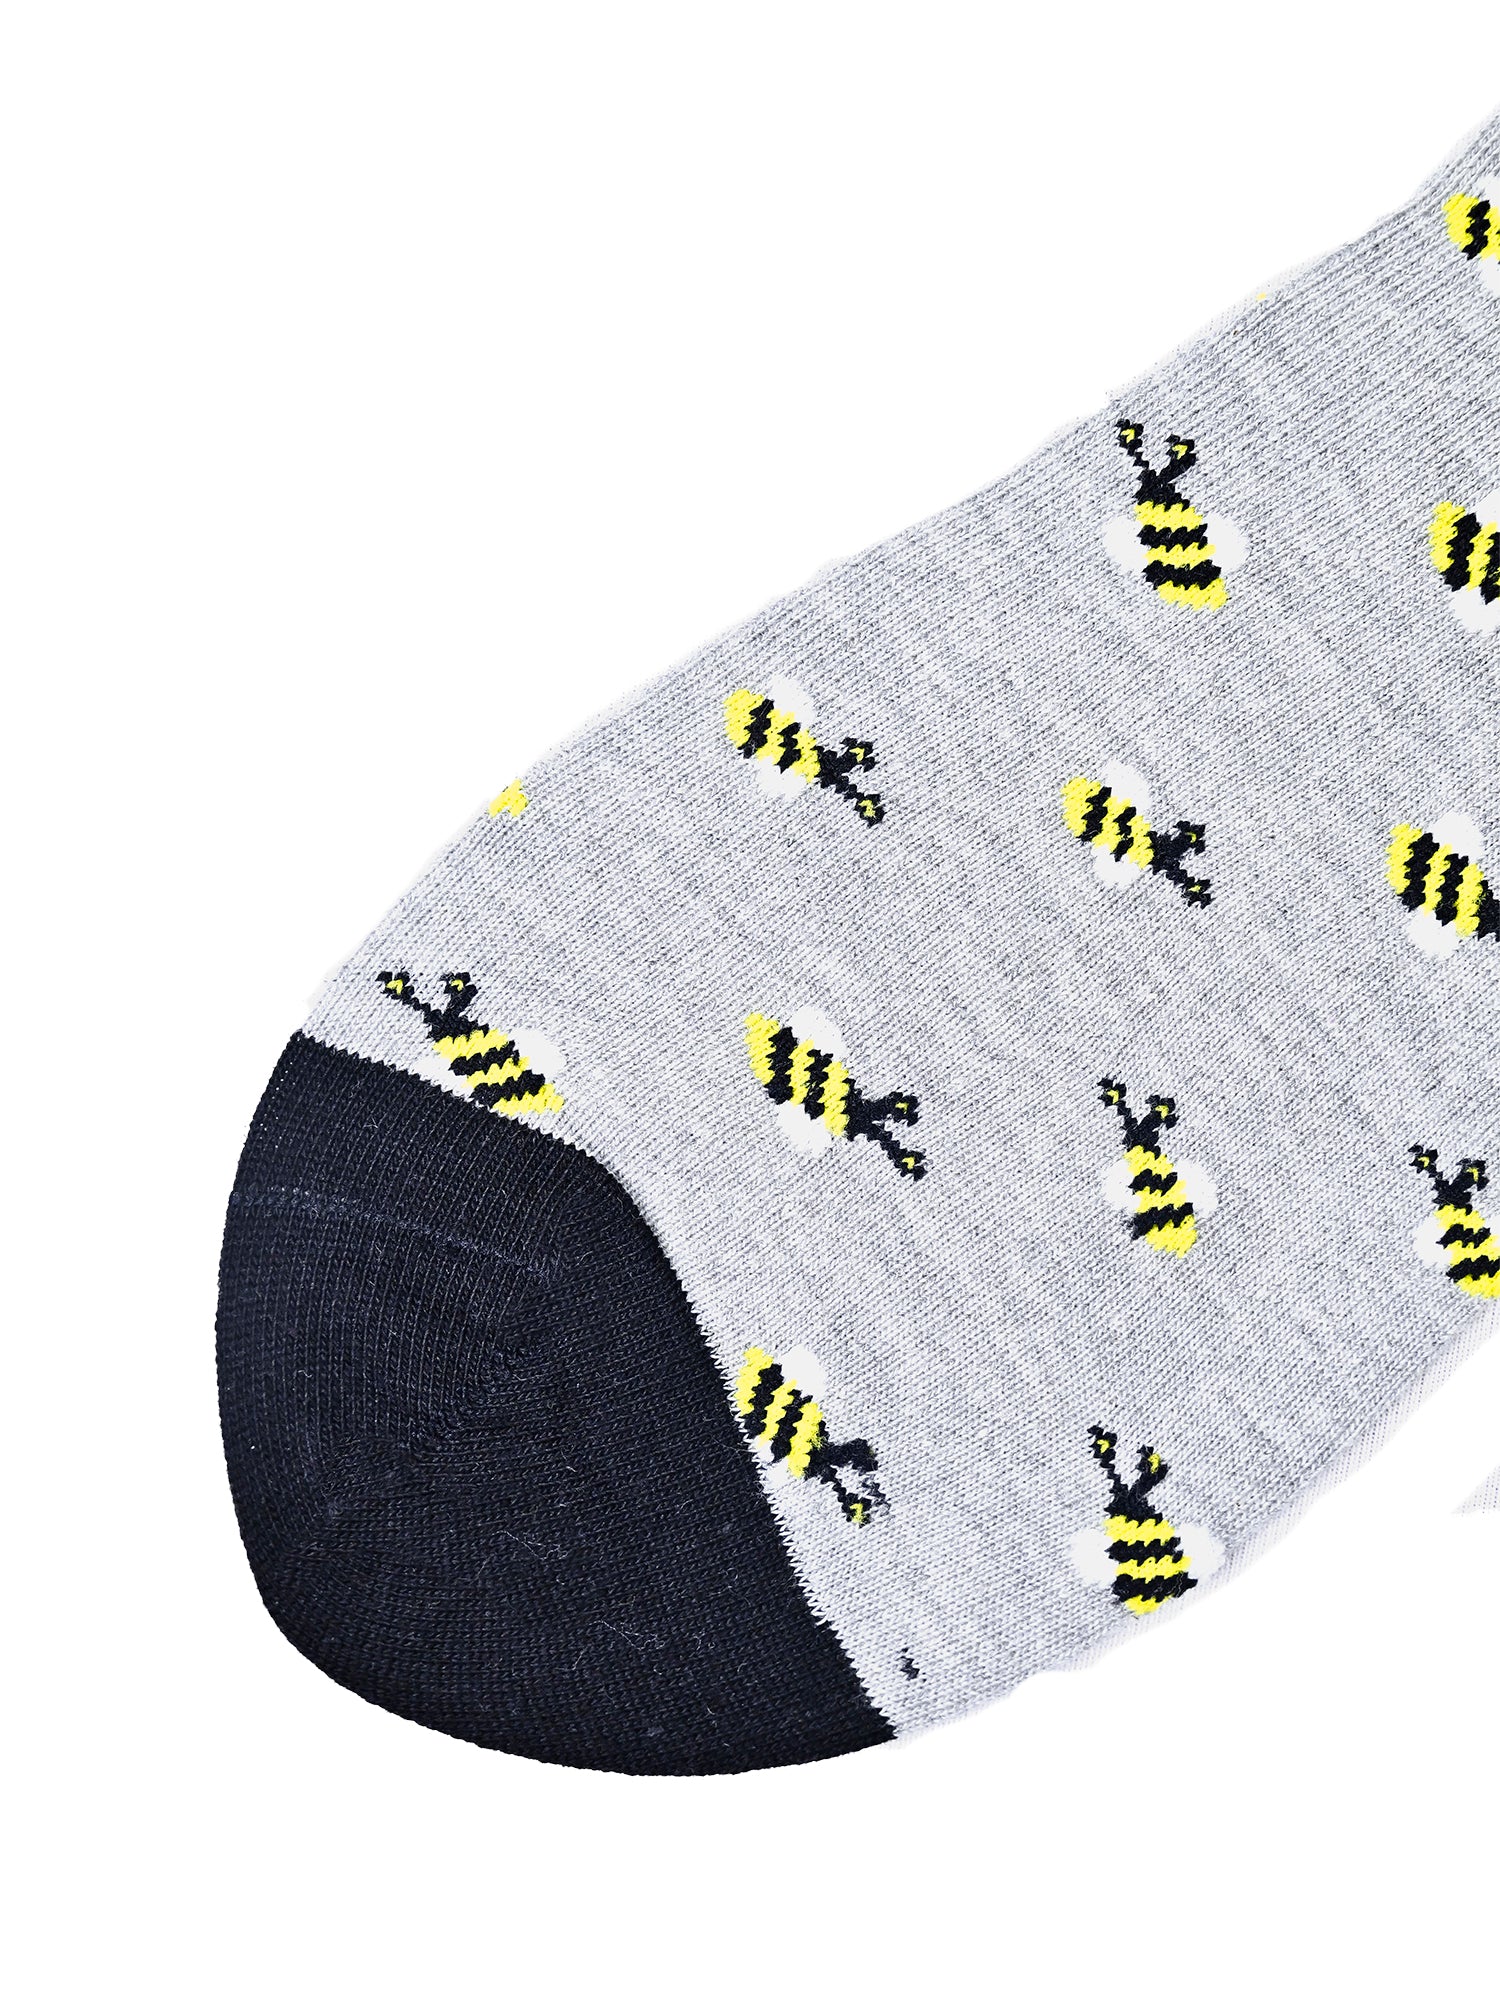 Bumblebee | Grey Mid-Calf Socks For Men | 1 Pair